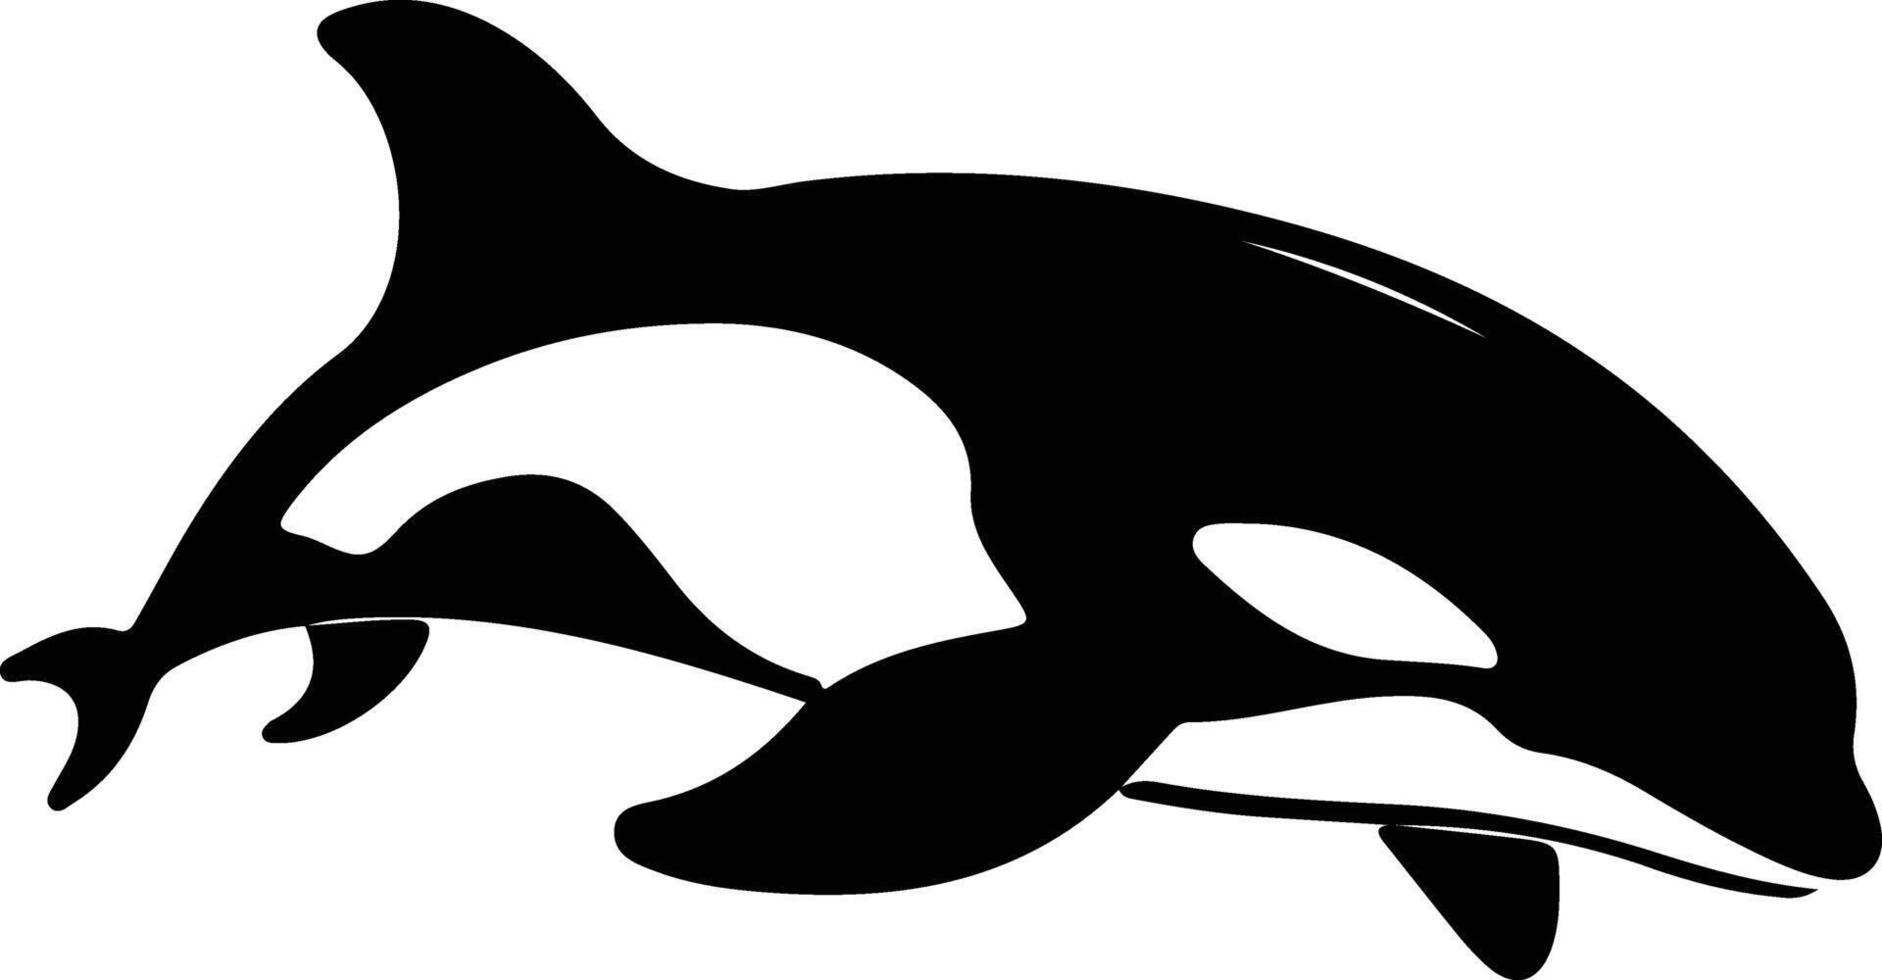 orca nero silhouette vettore